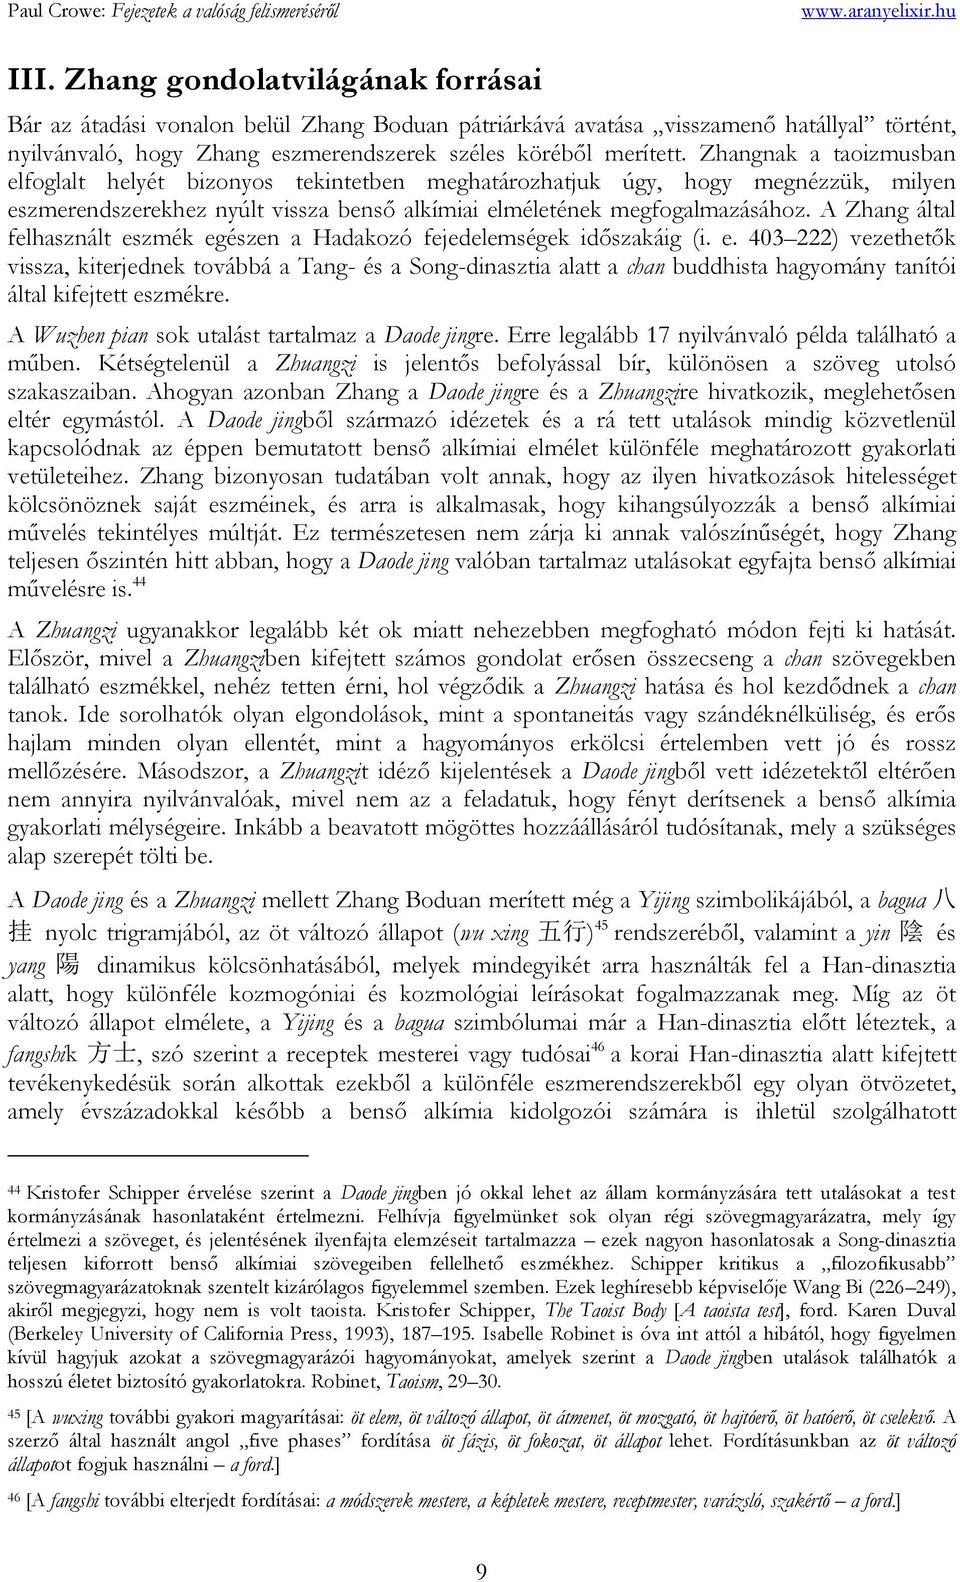 A Zhang által felhasznált eszmék egészen a Hadakozó fejedelemségek időszakáig (i. e. 403 222) vezethetők vissza, kiterjednek továbbá a Tang- és a Song-dinasztia alatt a chan buddhista hagyomány tanítói által kifejtett eszmékre.